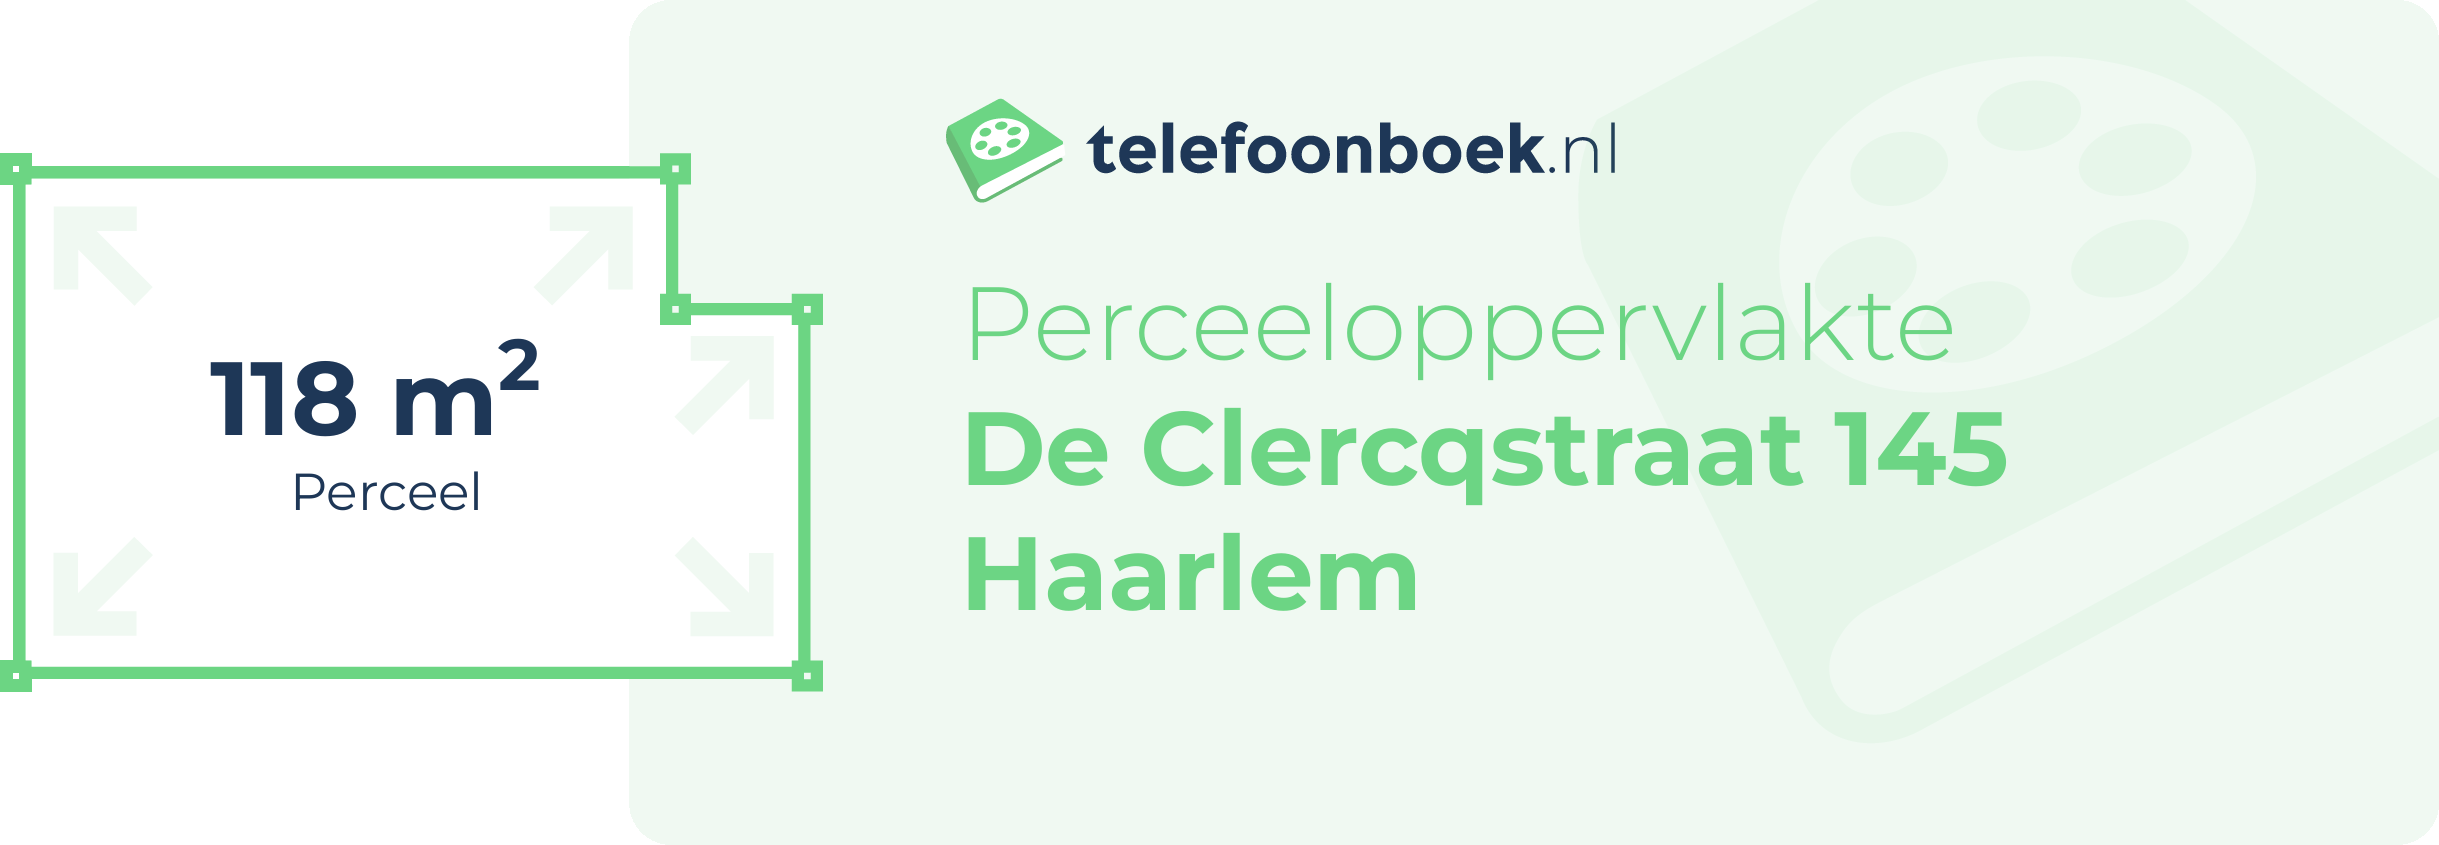 Perceeloppervlakte De Clercqstraat 145 Haarlem